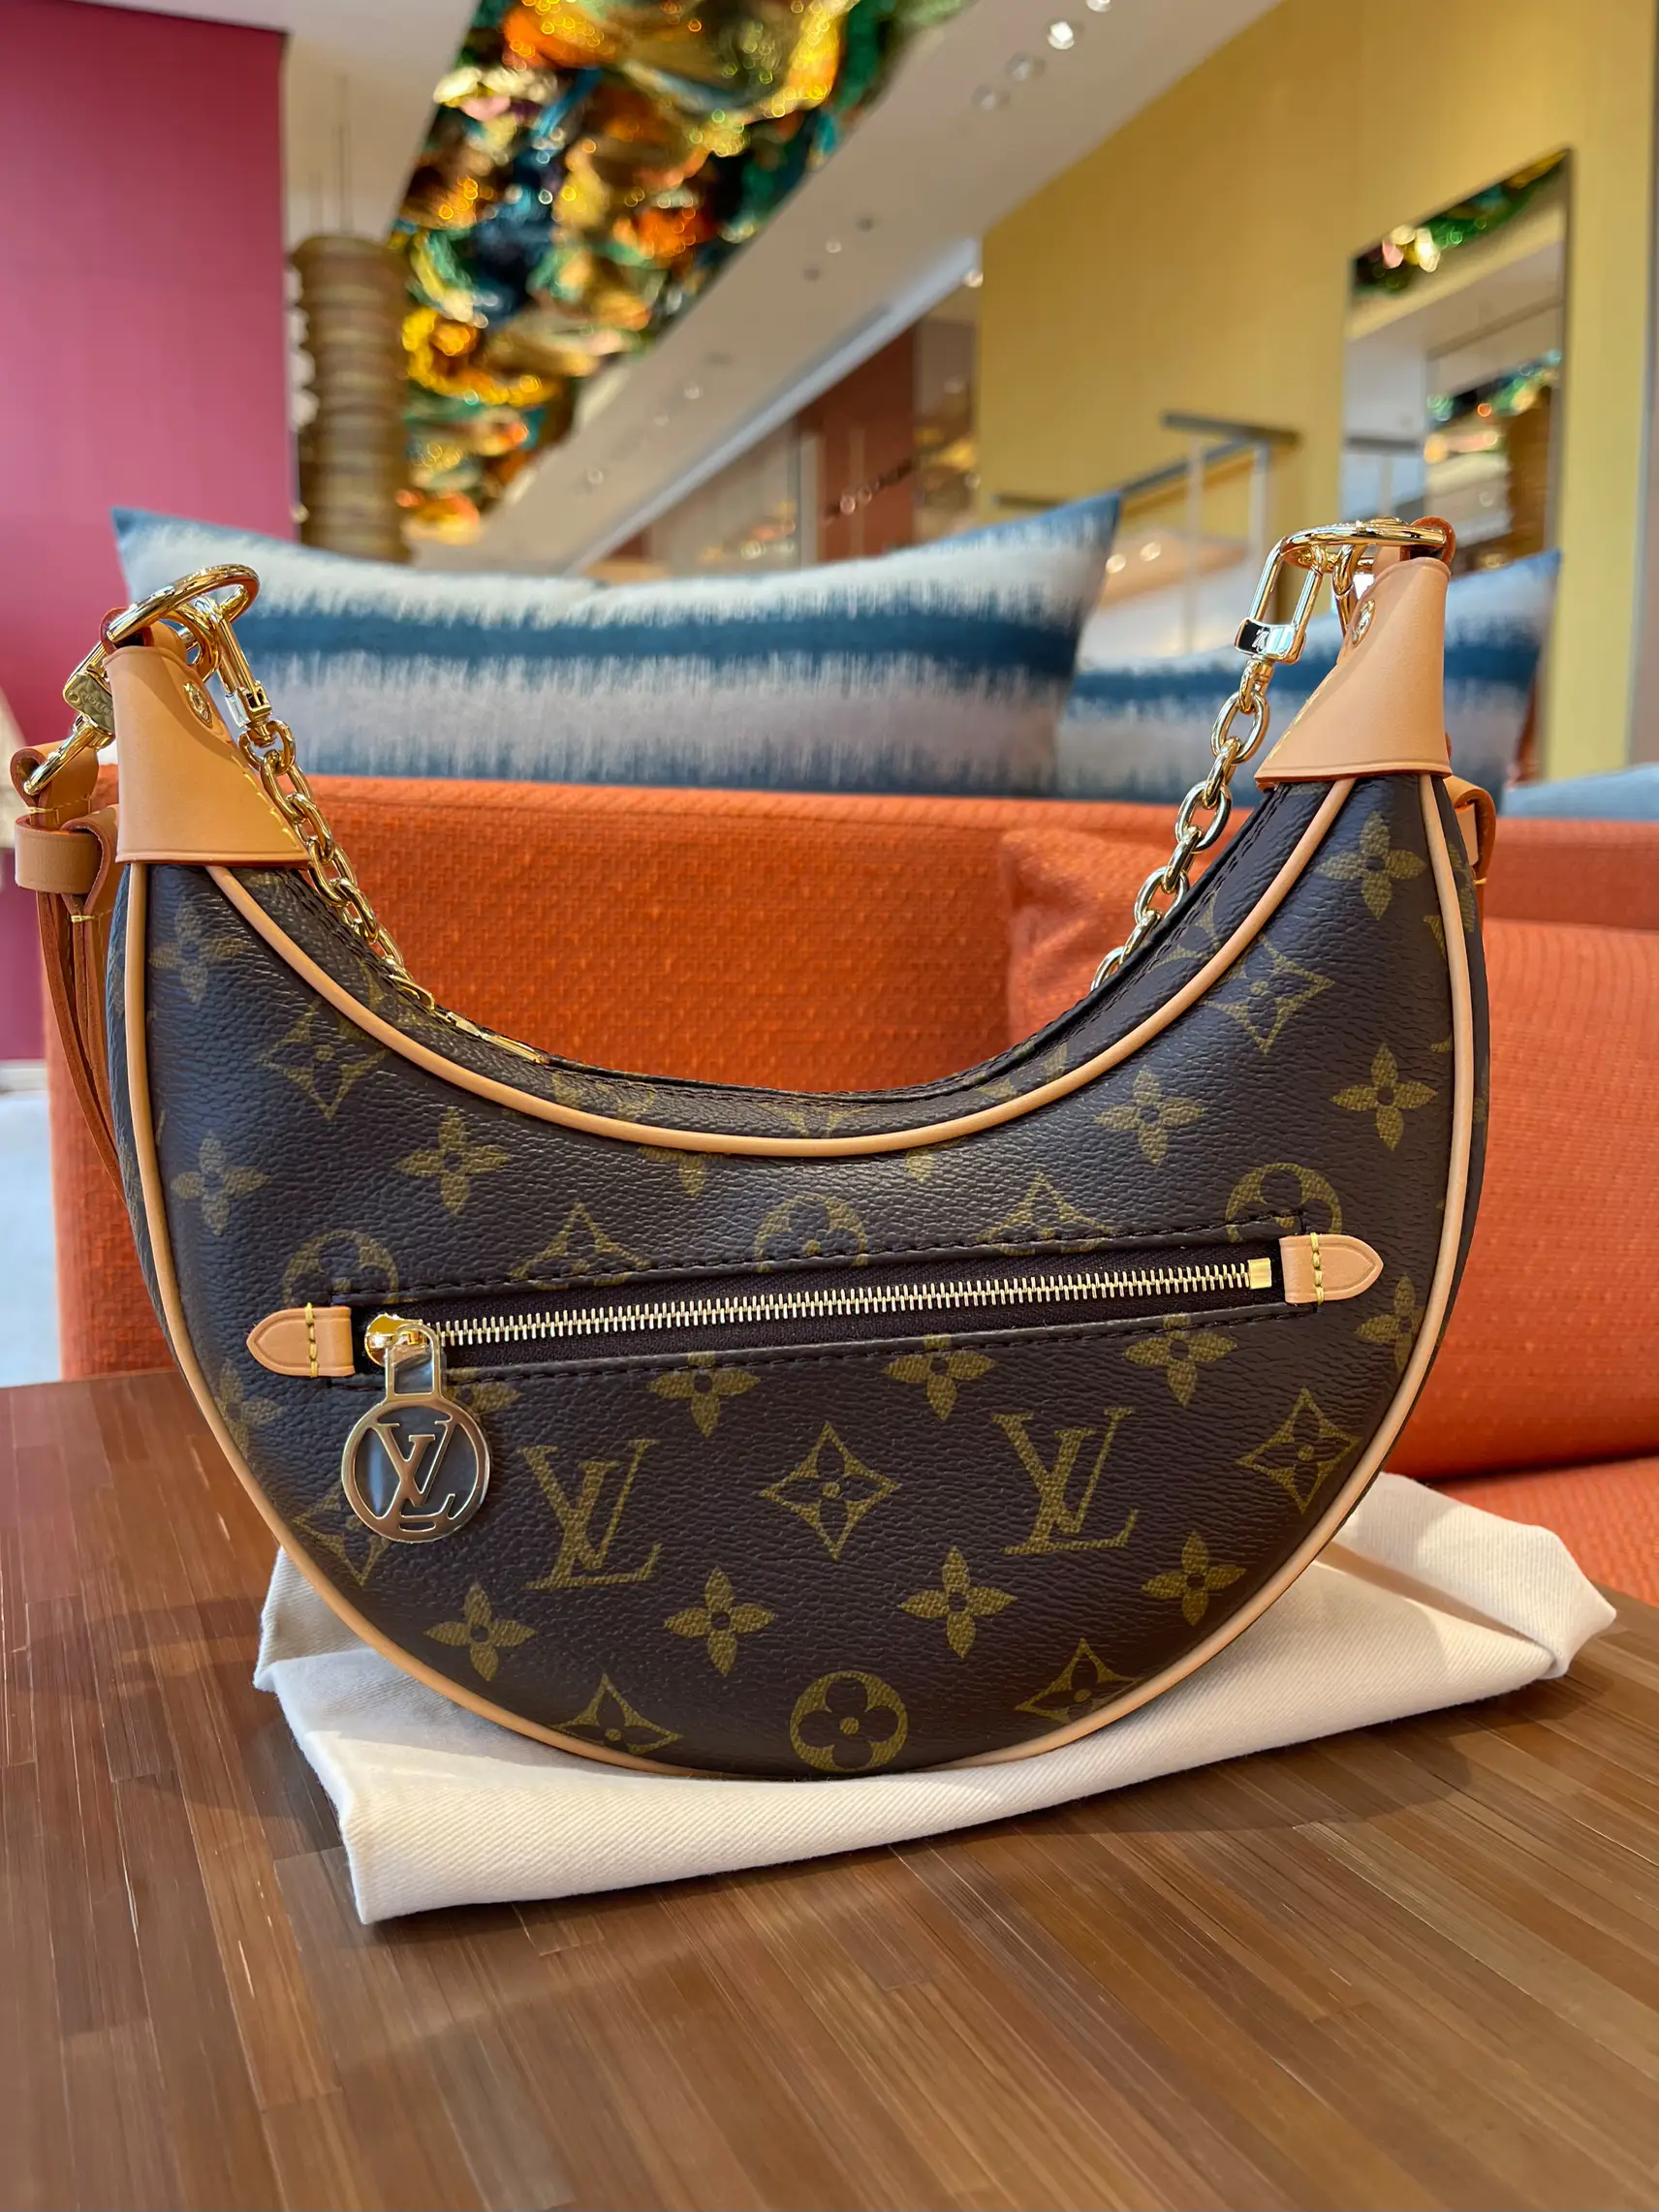 Louis Vuitton Loop Handbag Unboxing 